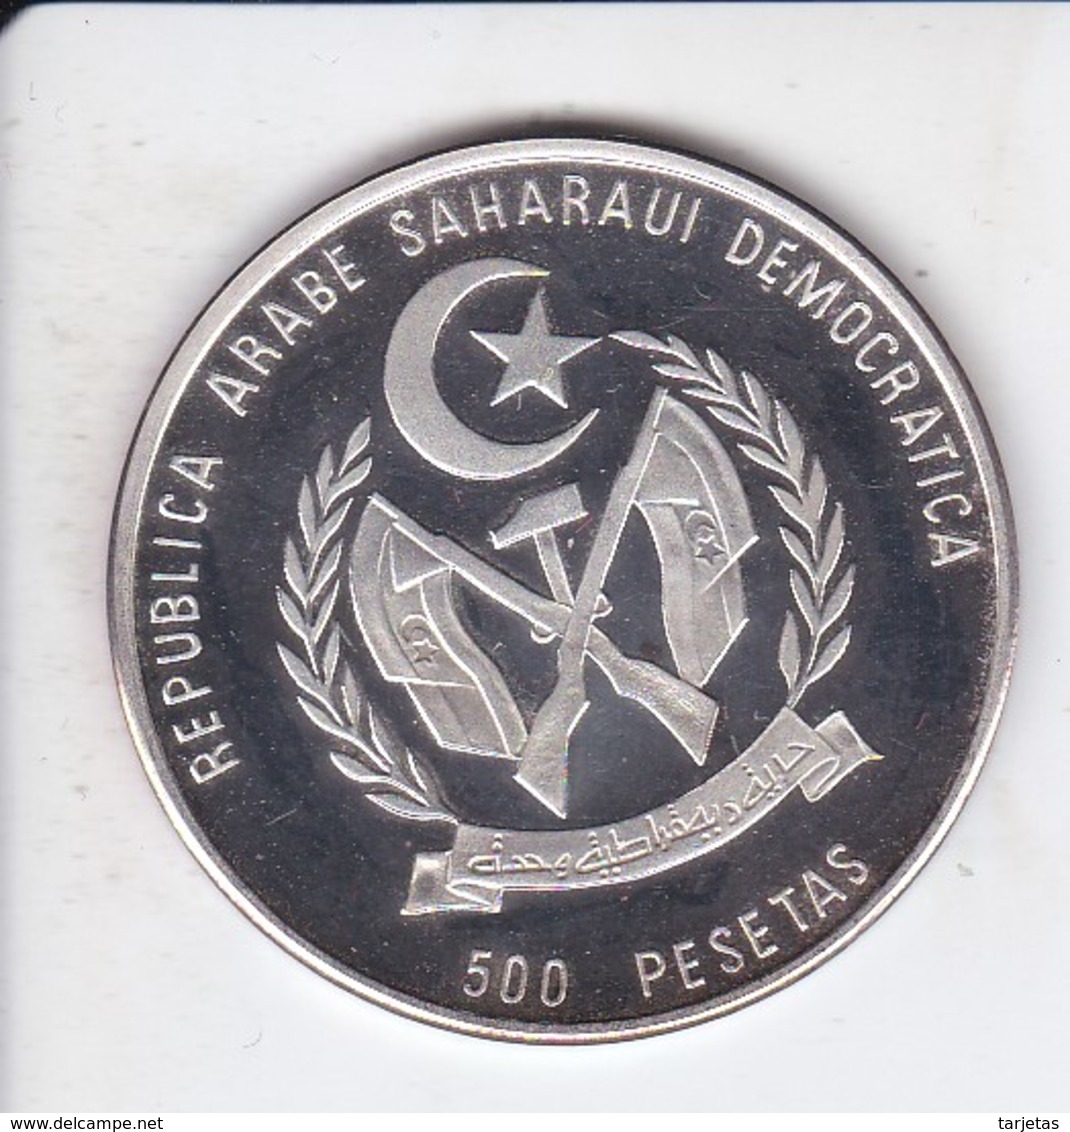 MONEDA DE PLATA DE REPUBLICA ARABE SAHARAUI DE 500 PESETAS DEL AÑO 1994 DINOSAURIO (SILVER-ARGENT) - Sahara Occidental